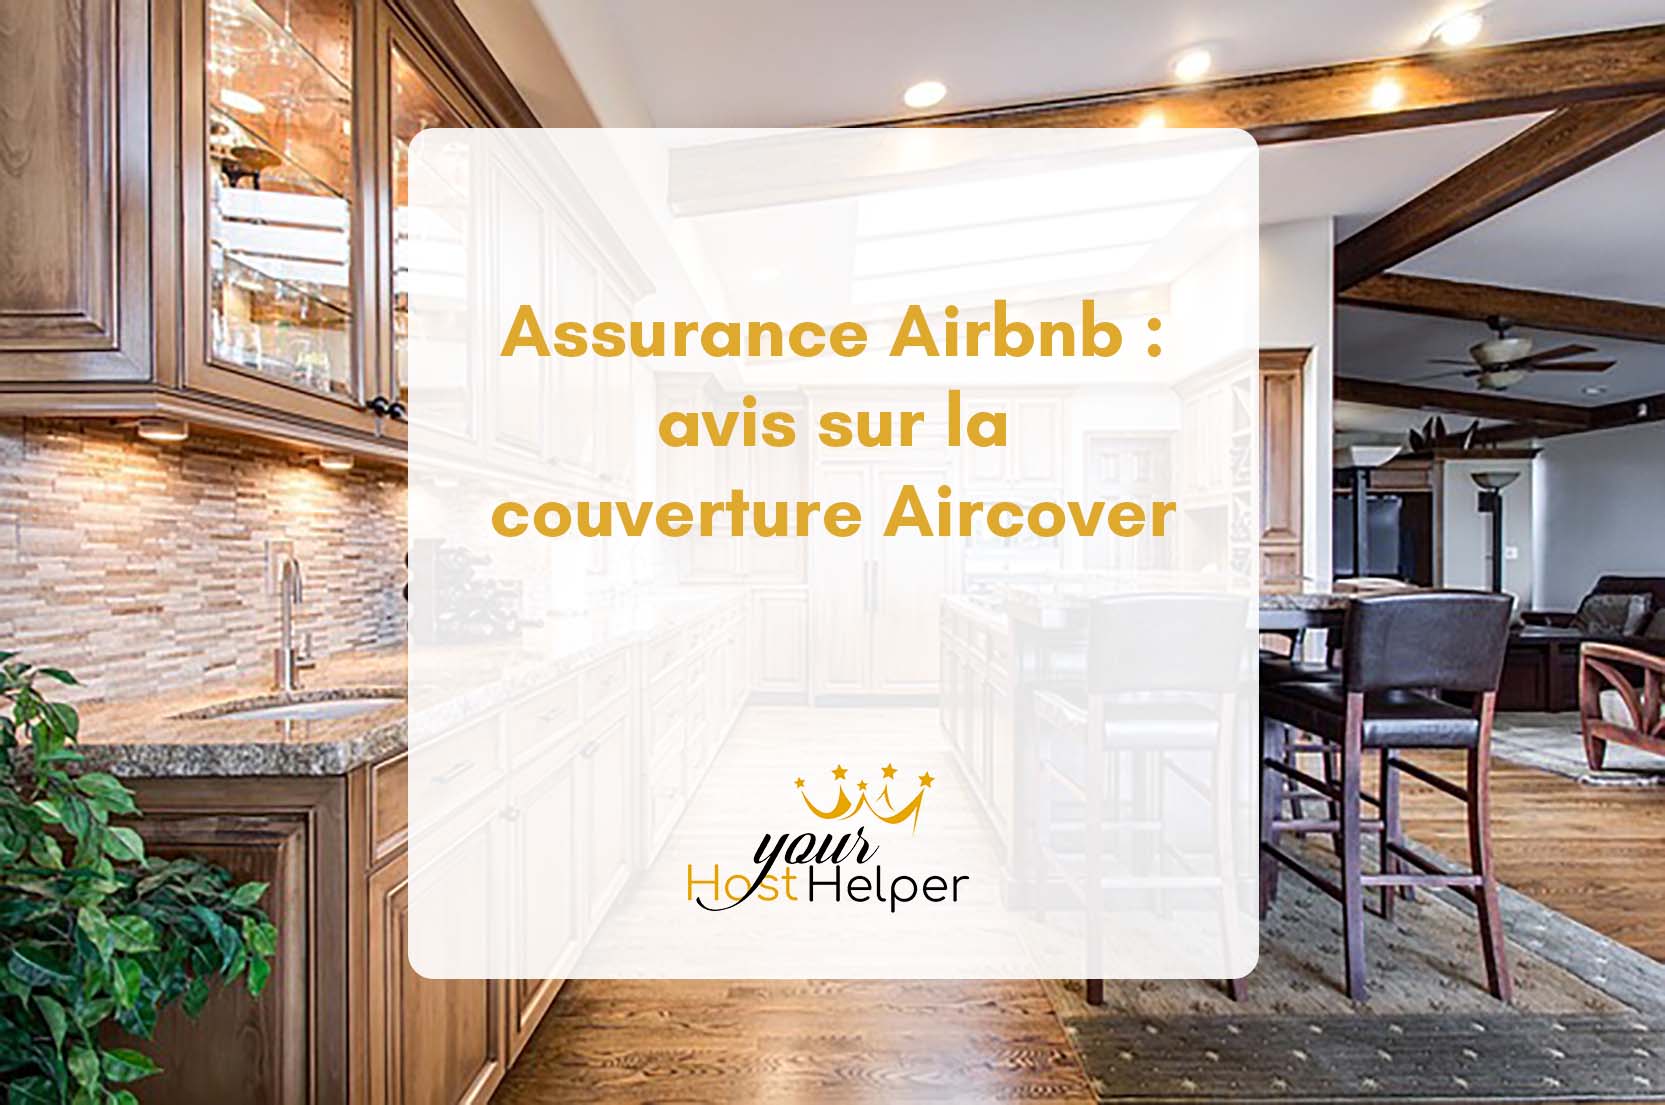 Вы сейчас просматриваете Airbnb Insurance: Воздушное страхование согласно вашему консьержу из Довиля